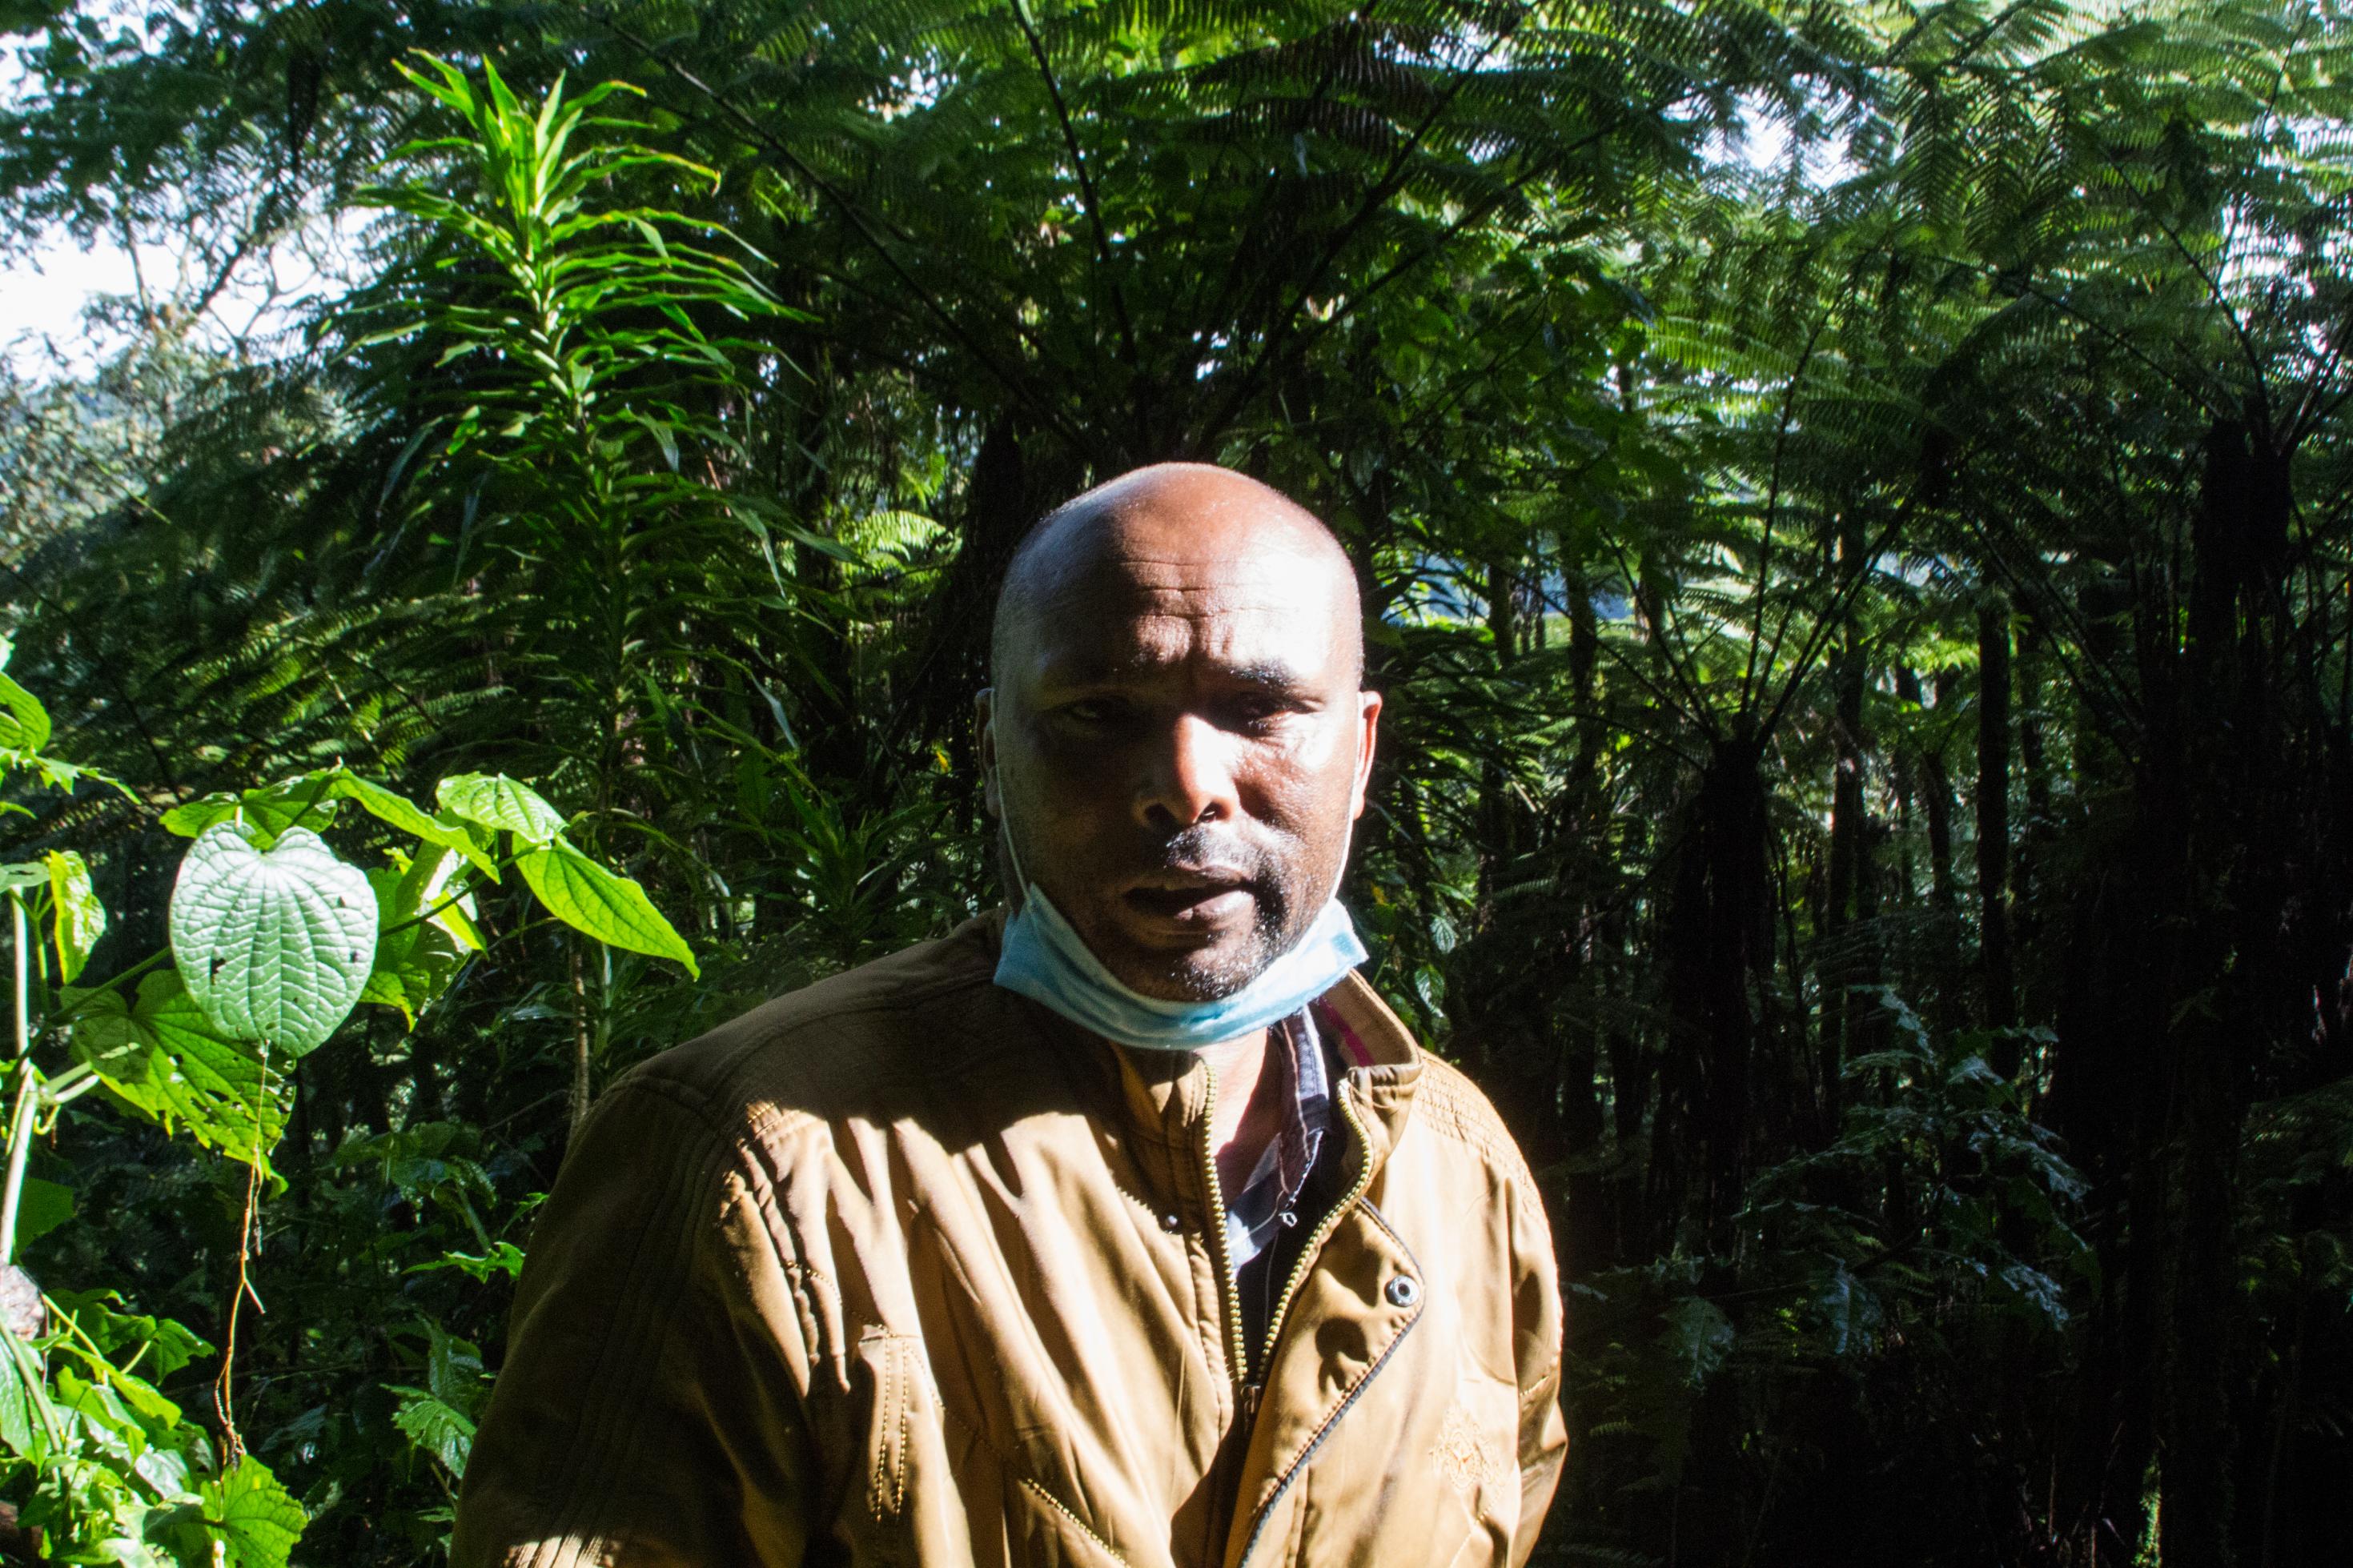 John Mutai im Sonnenlicht, im Hintergrund der Regenwald zu sehen.